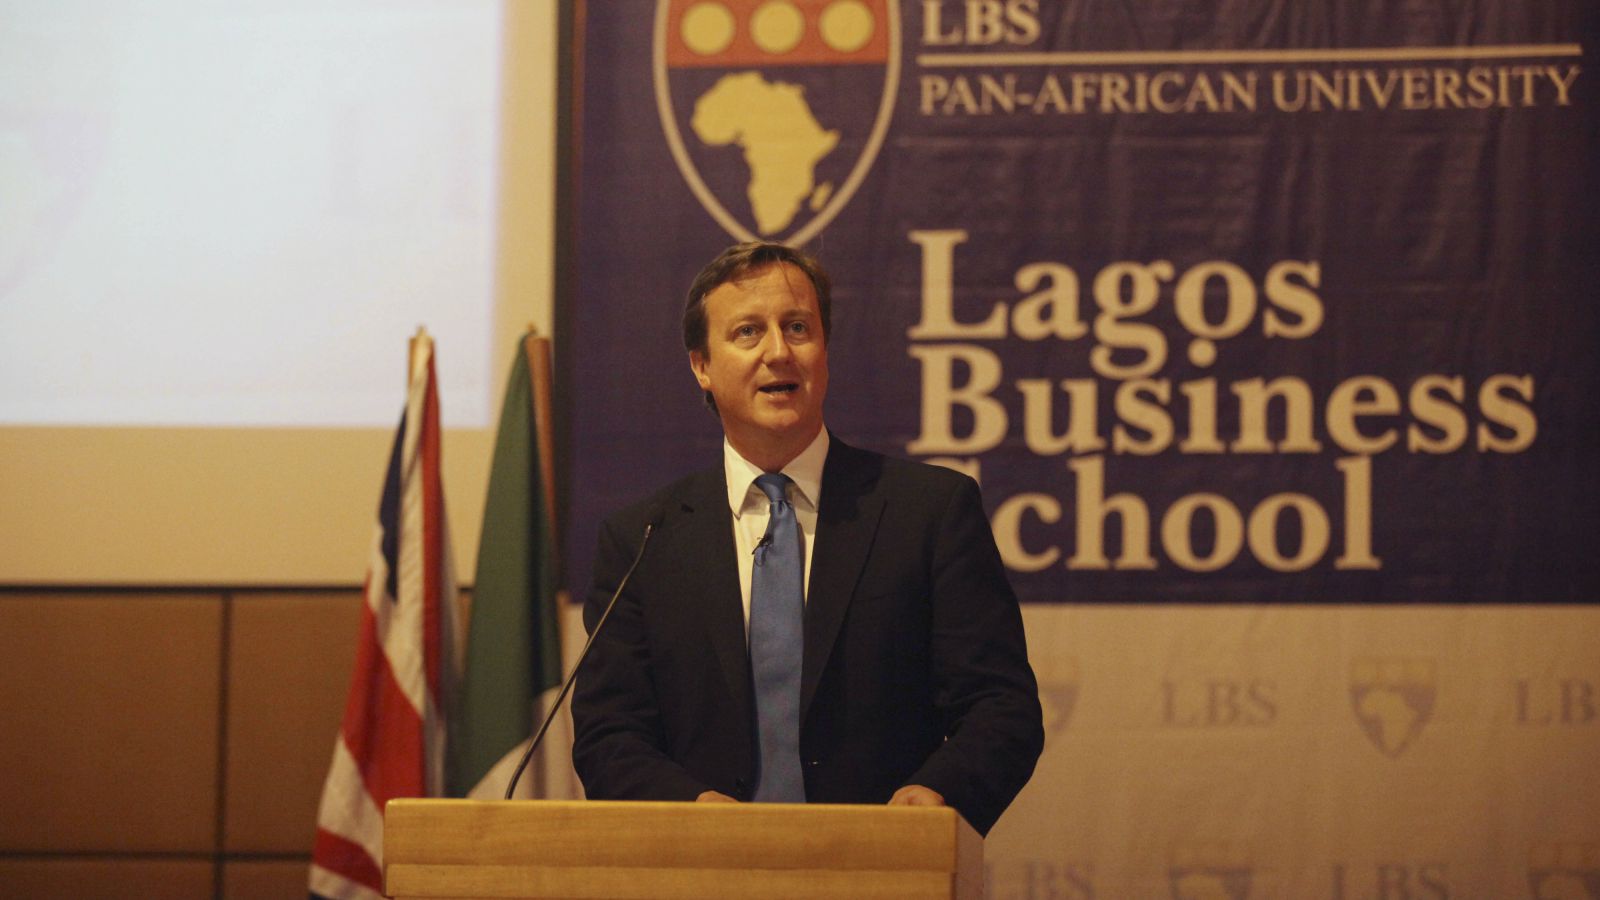 Lagos Business School Starts HR, Sales & Marketing Academies